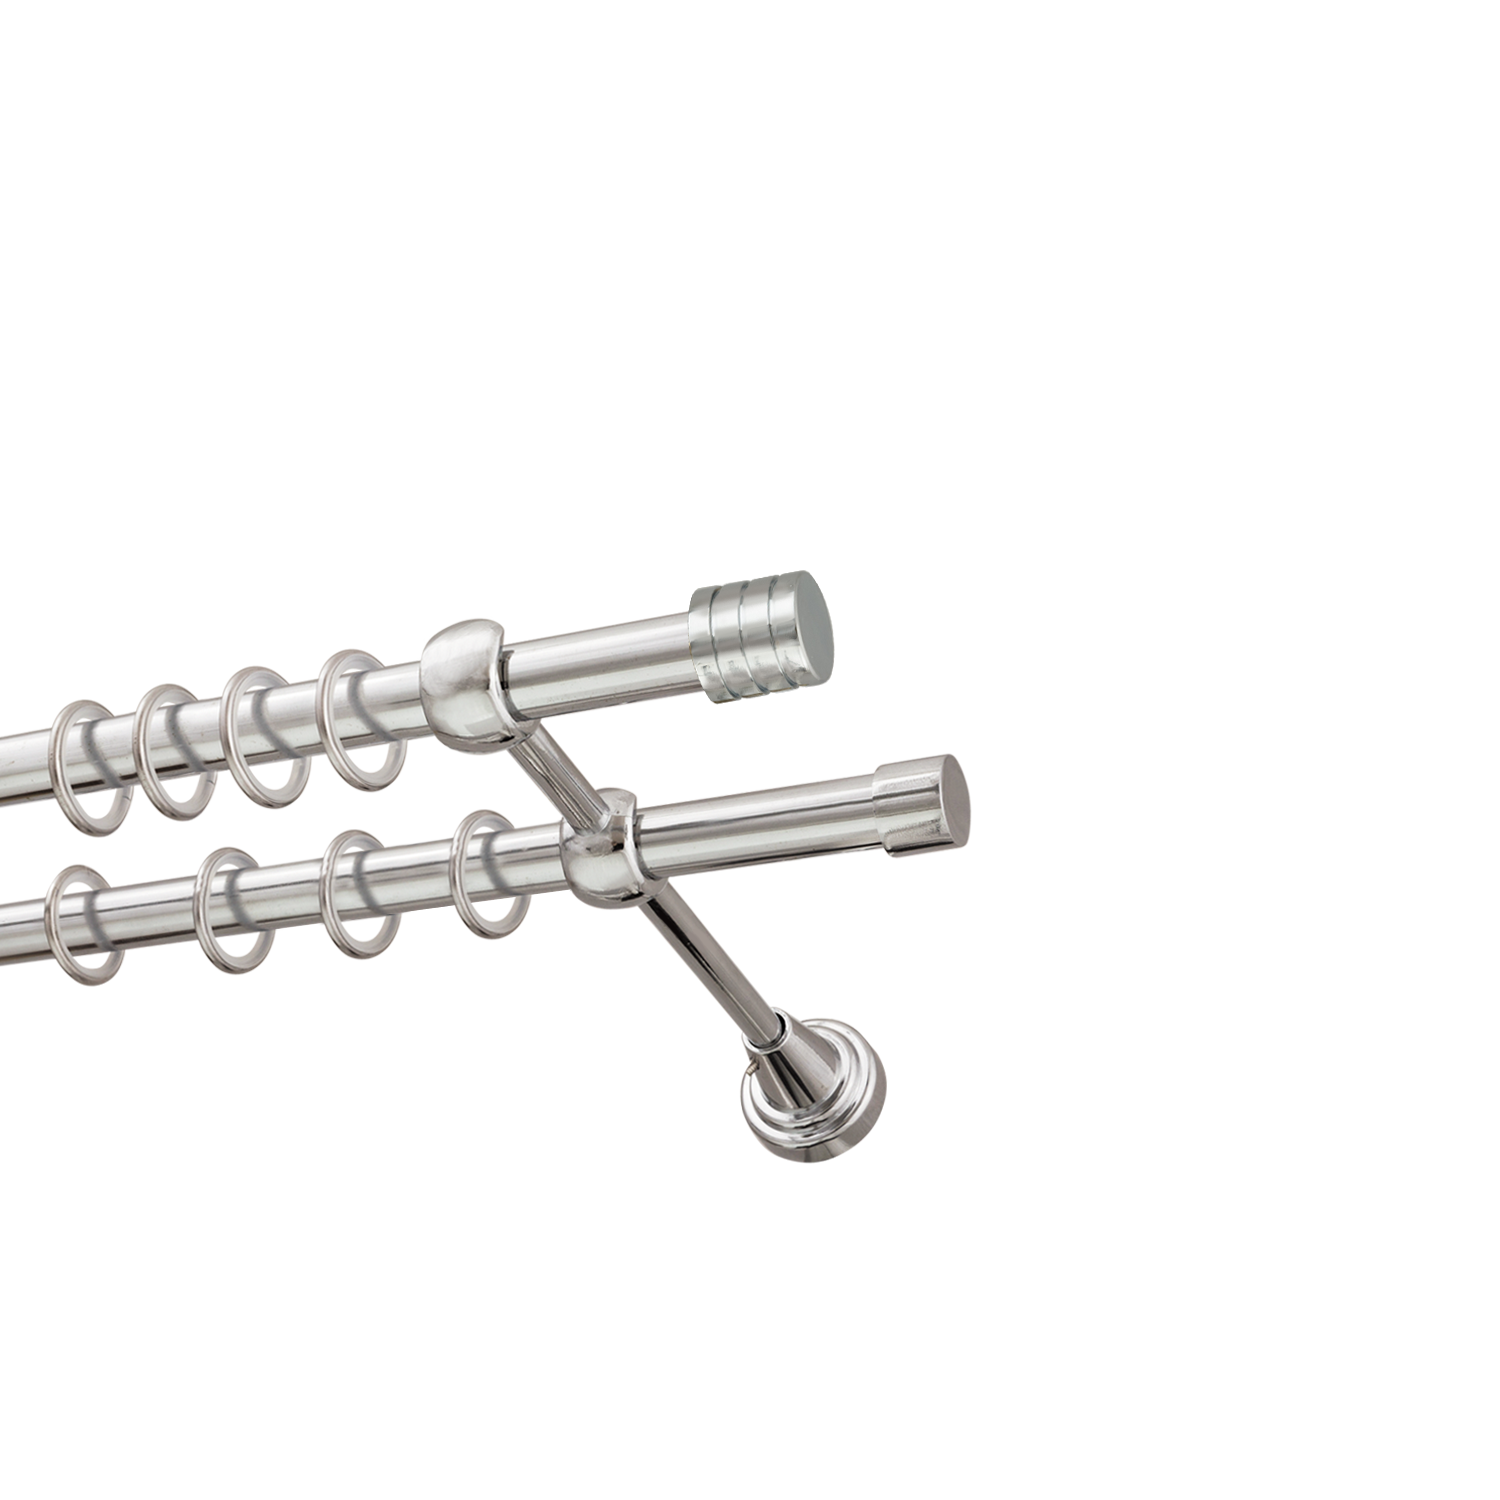 Металлический карниз для штор Подиум, двухрядный 16/16 мм, серебро, гладкая штанга, длина 180 см - фото Wikidecor.ru